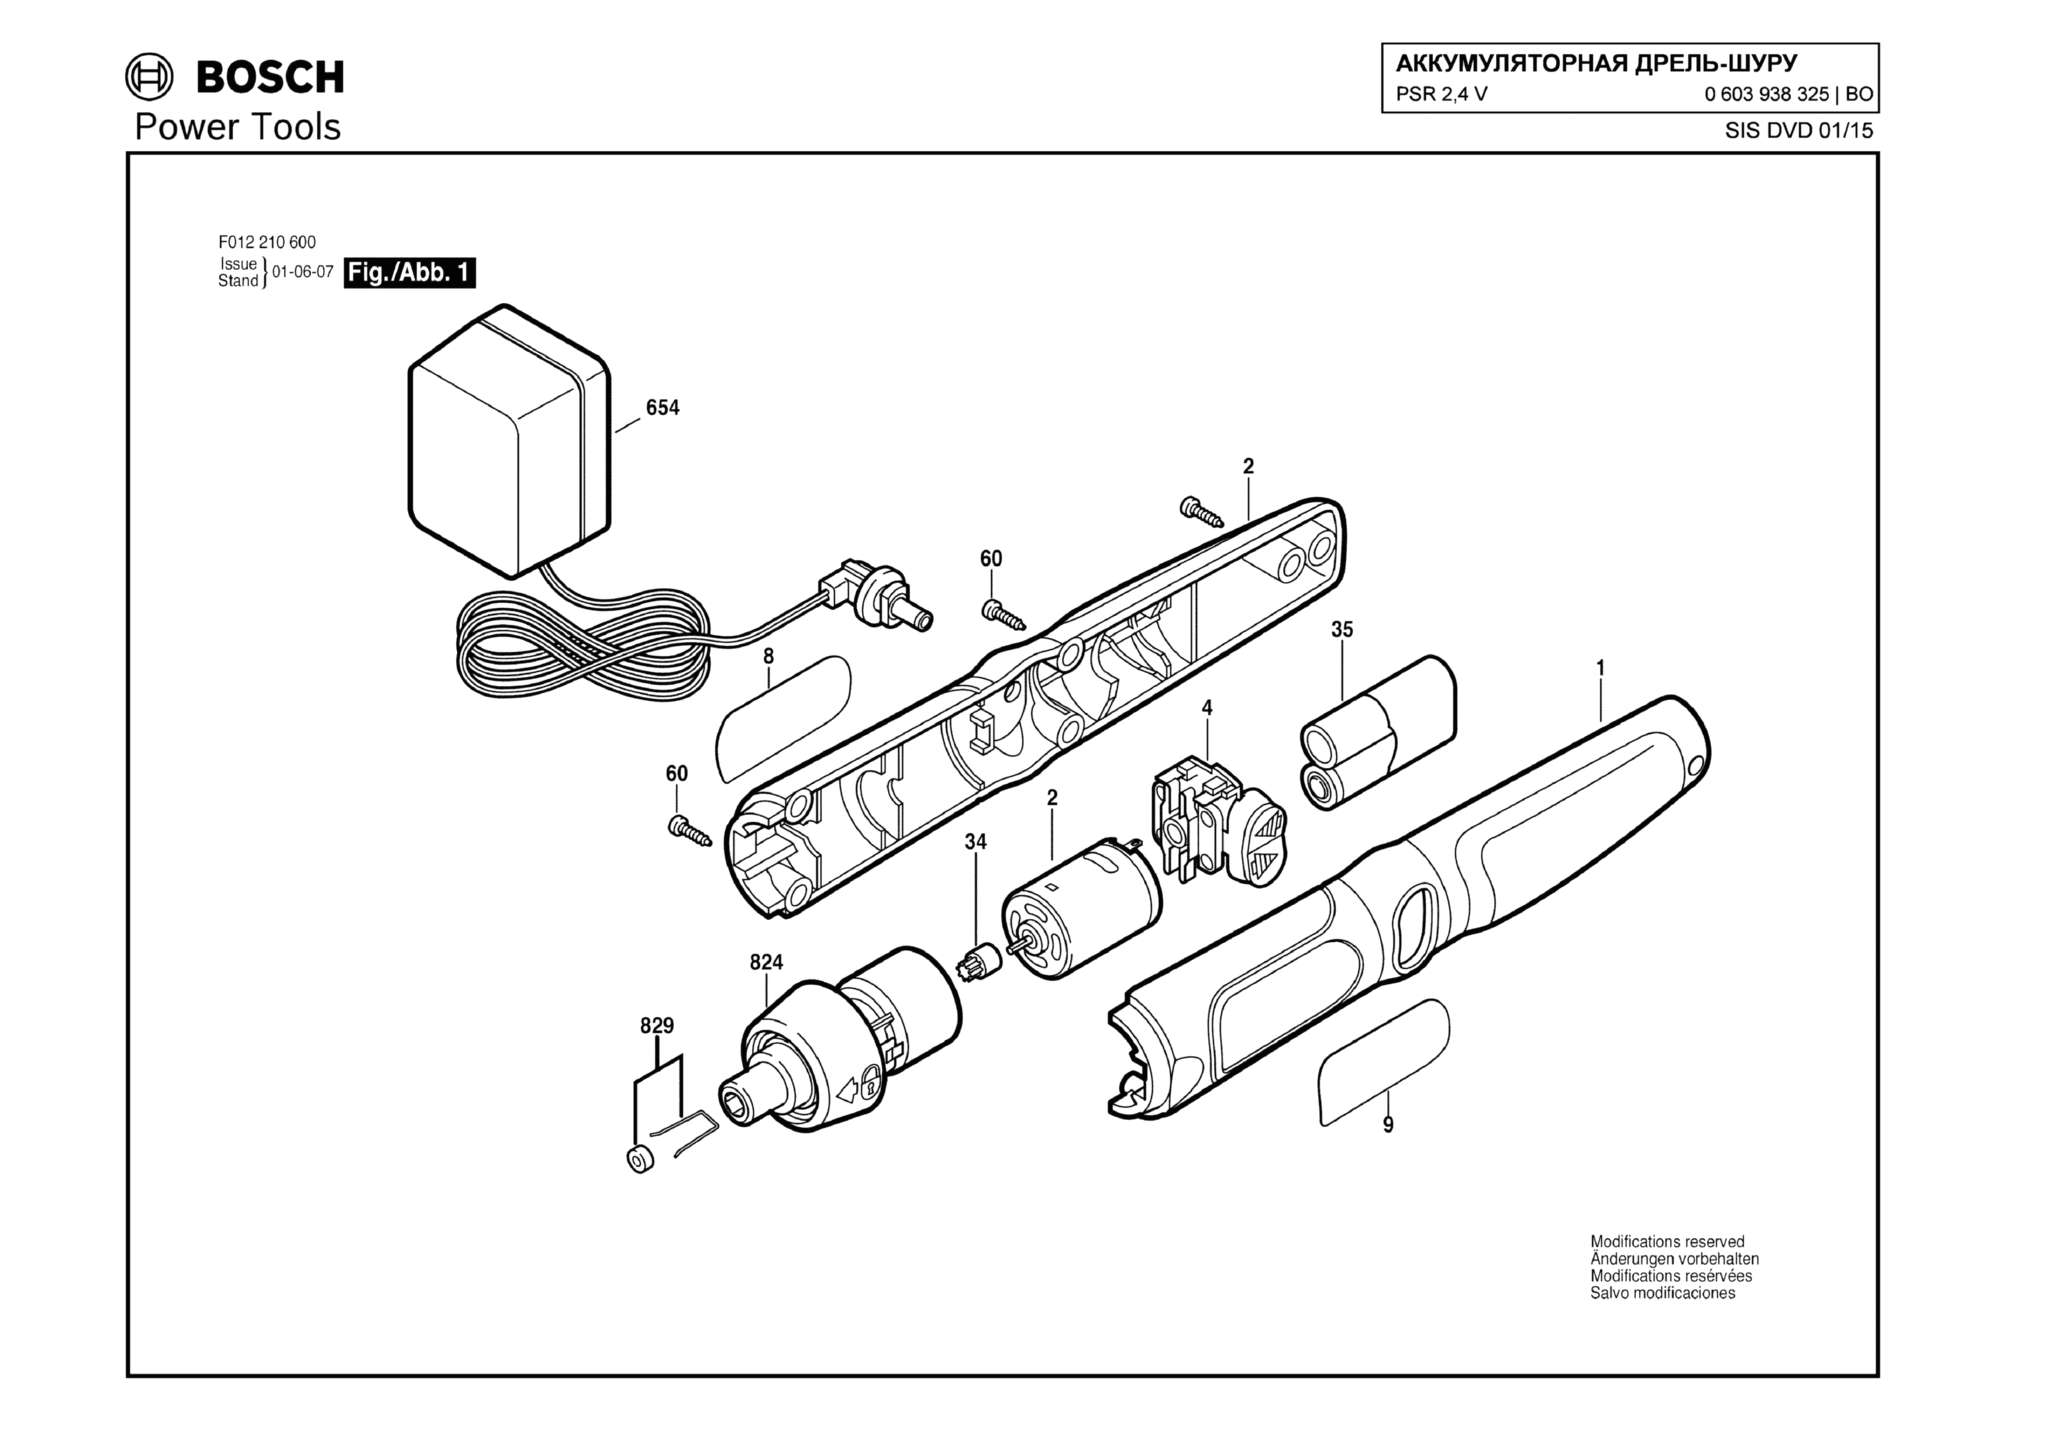 Запчасти, схема и деталировка Bosch PSR 2,4 V (ТИП 0603938325)